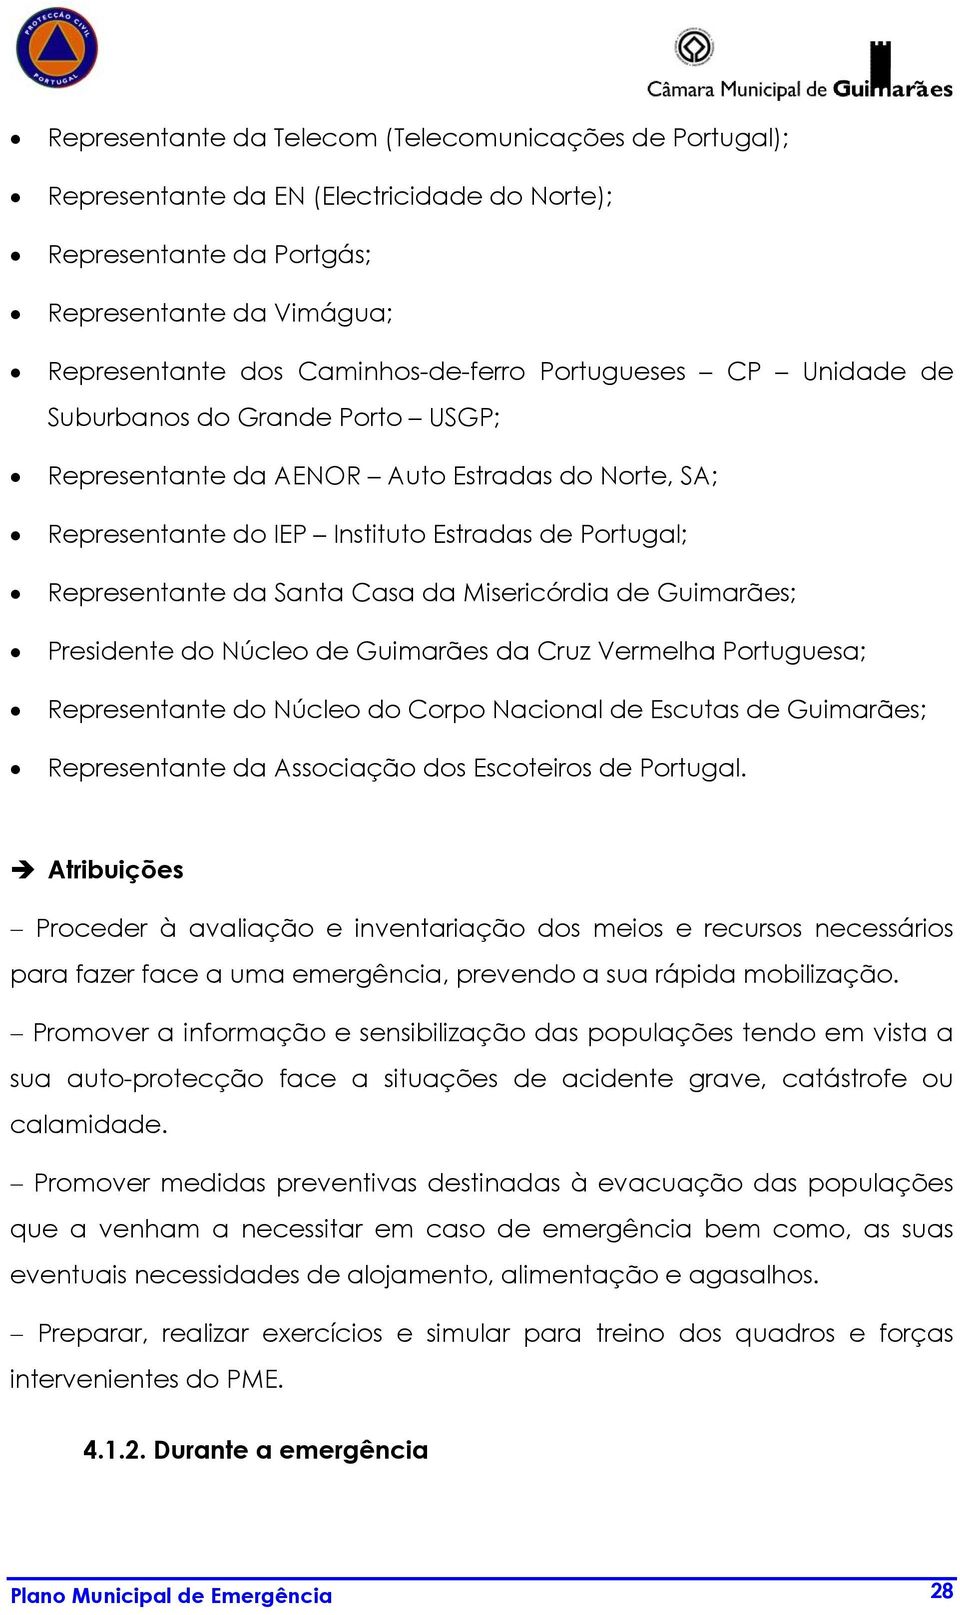 Presinte do Núcleo Guimarães da Cruz Vermelha Portuguesa; Representante do Núcleo do Corpo Nacional Escutas Guimarães; Representante da Associação dos Escoteiros Portugal.